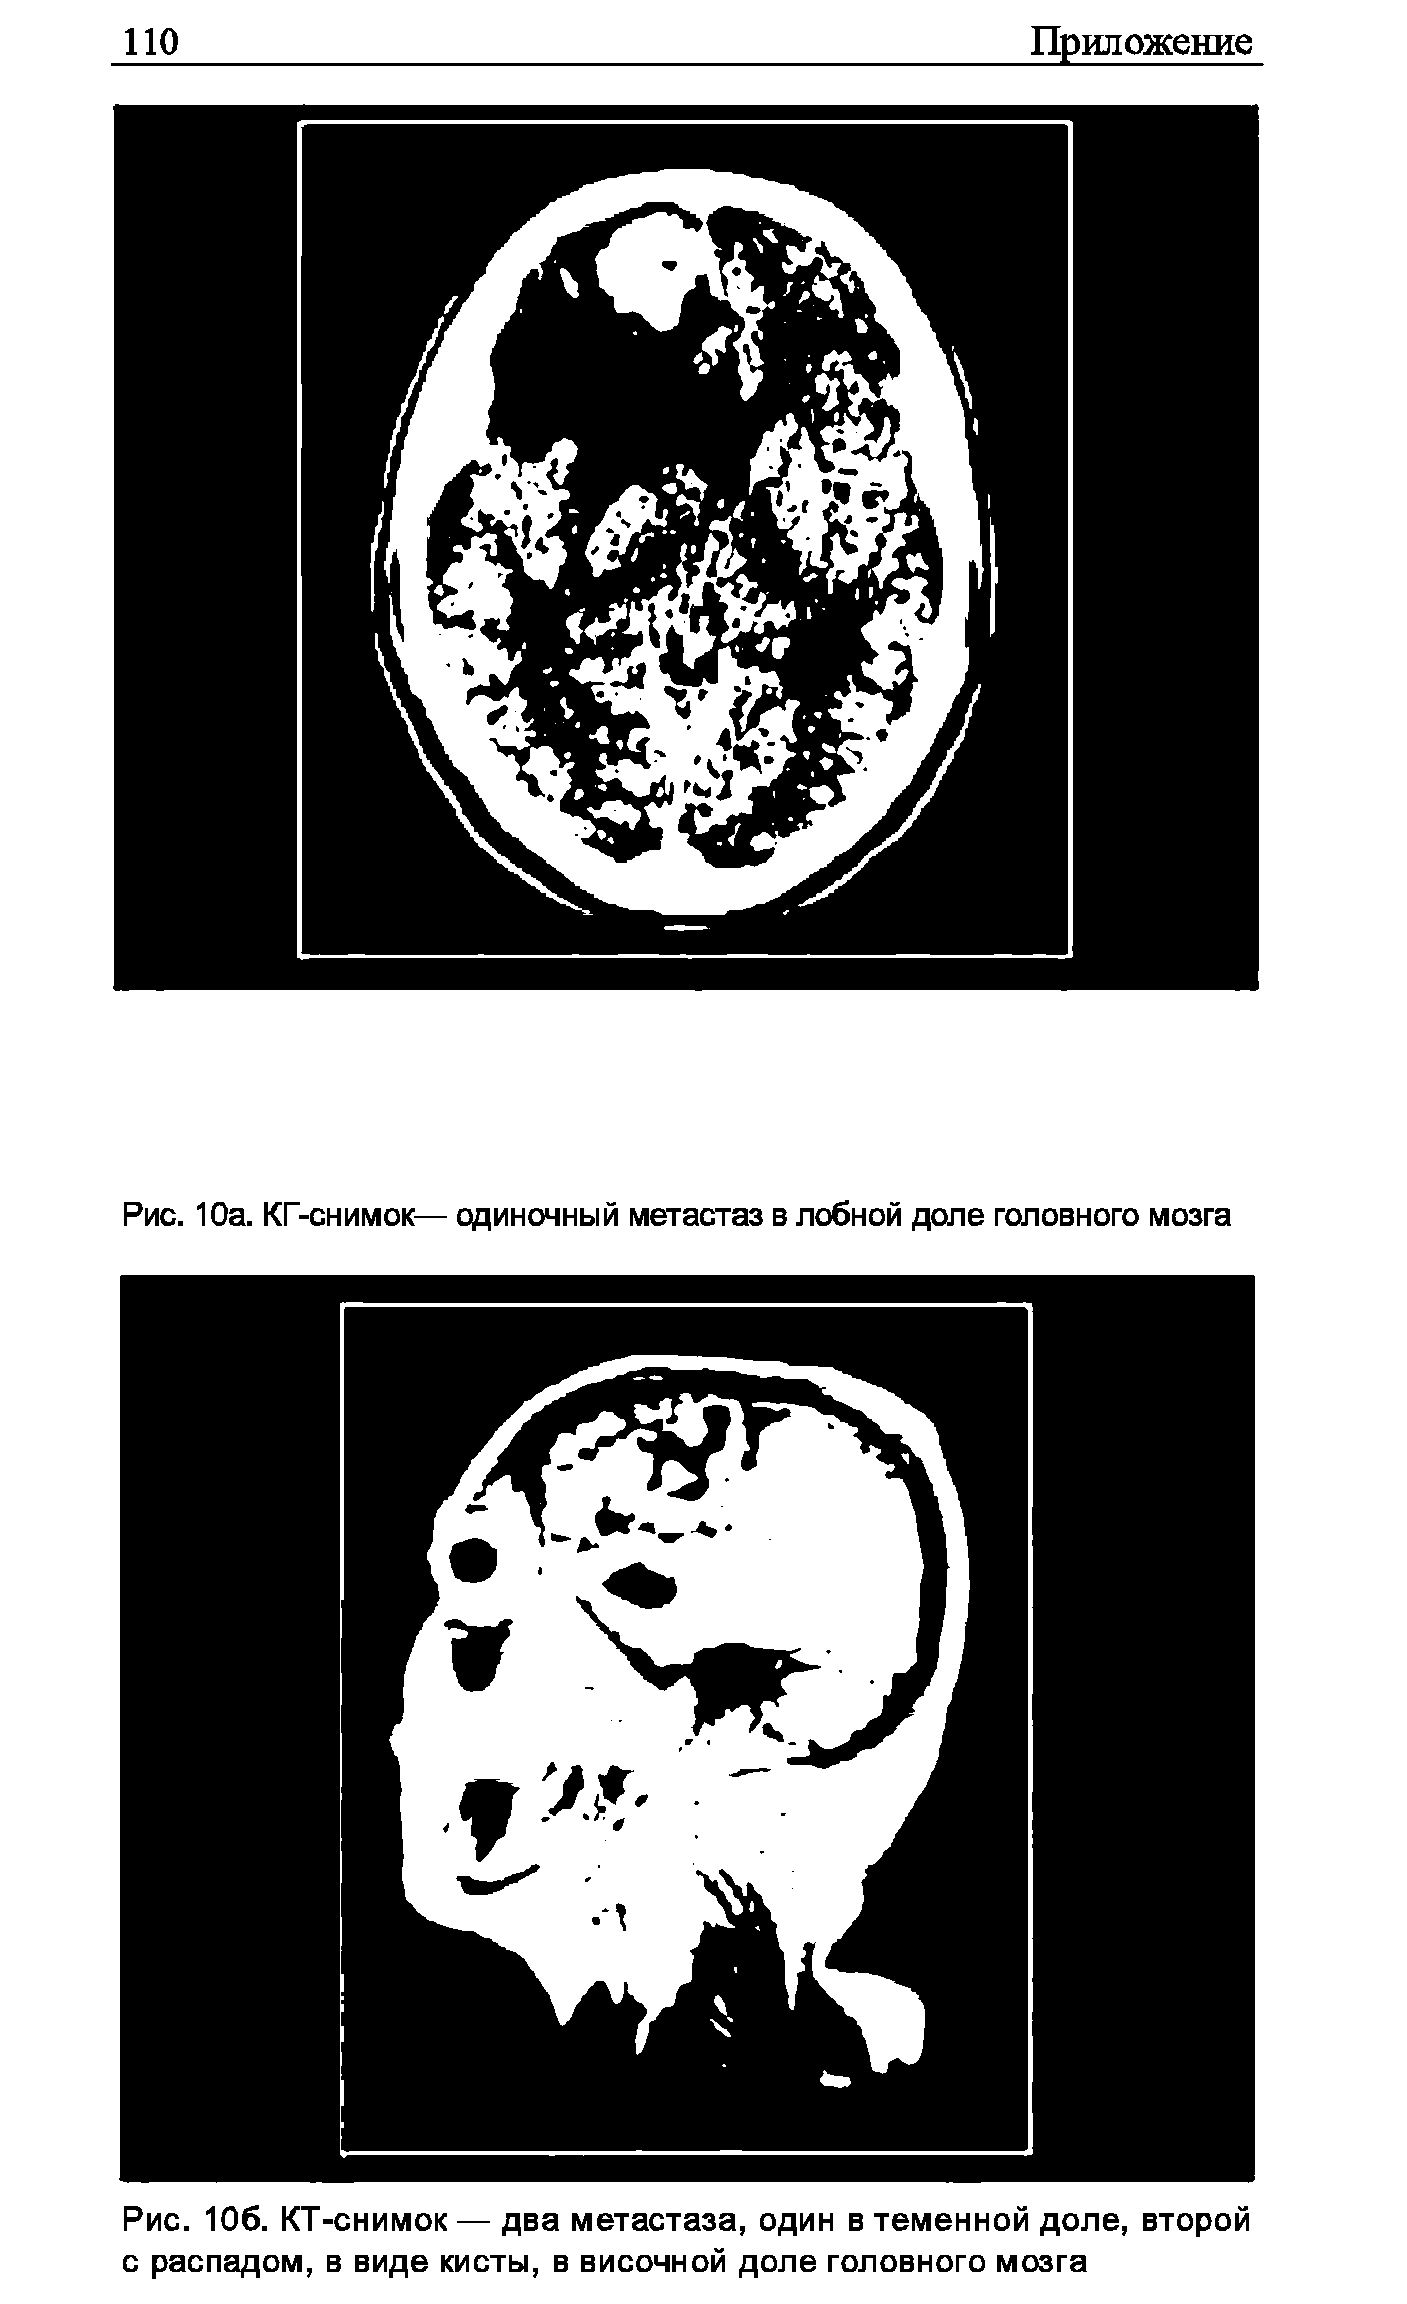 Рис. 106. КТ-снимок — два метастаза, один в теменной доле, второй с распадом, в виде кисты, в височной доле головного мозга...